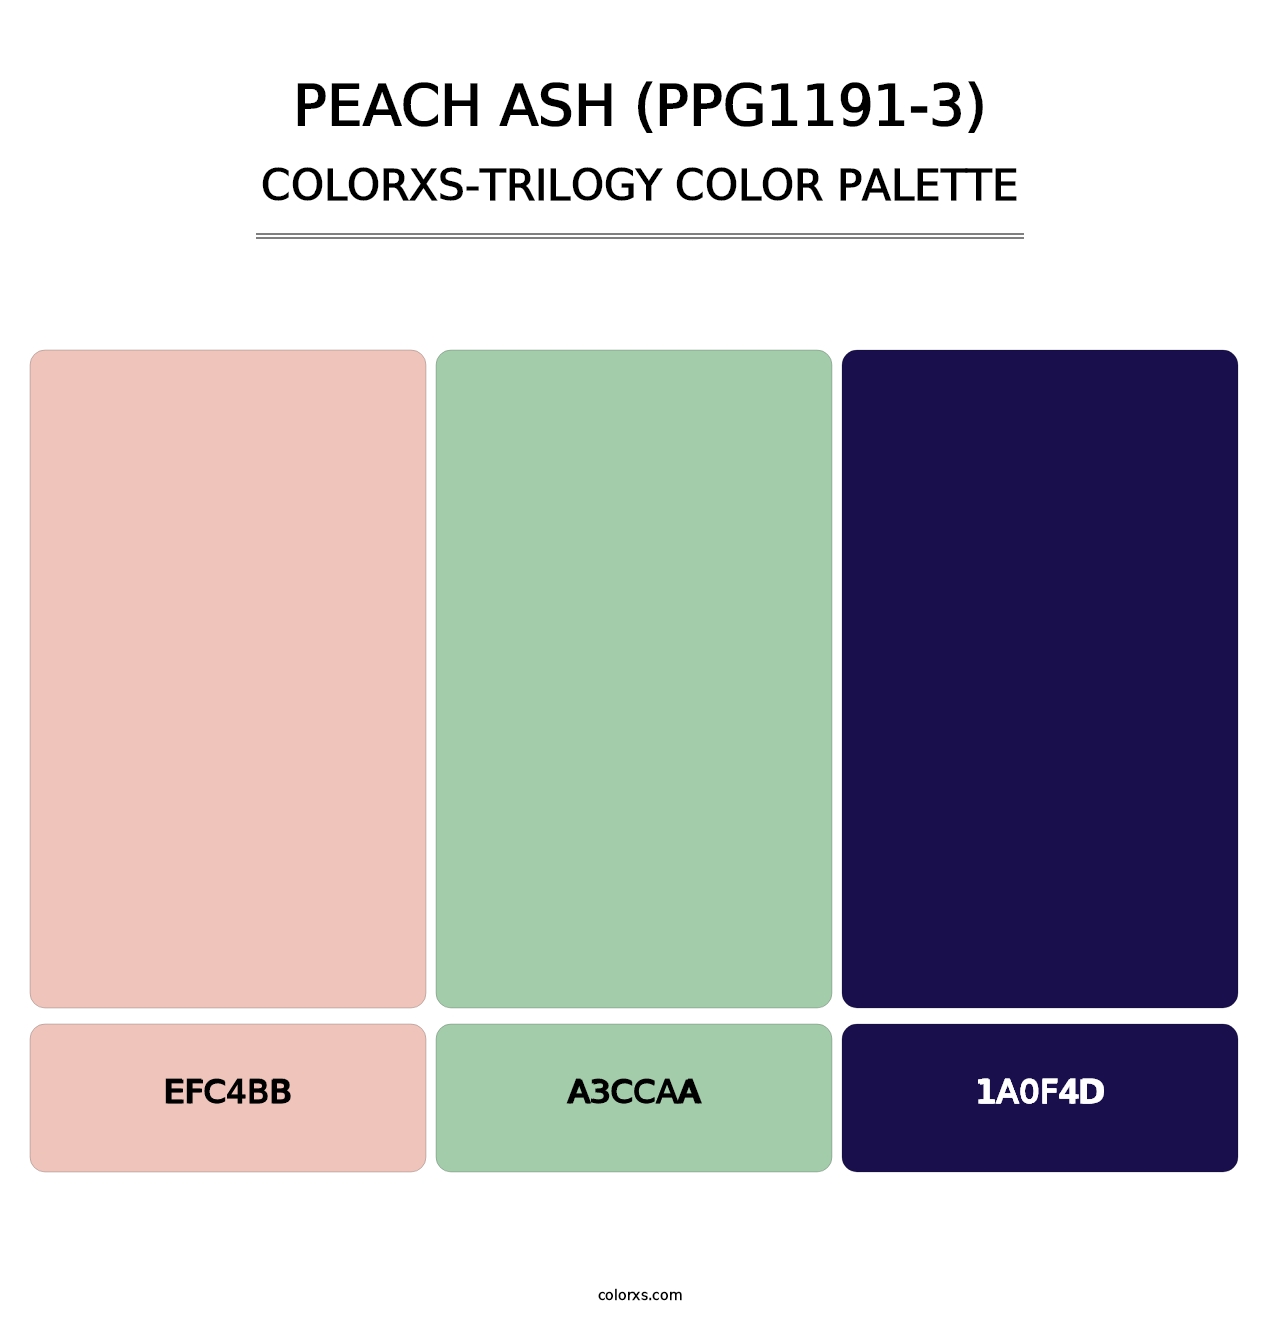 Peach Ash (PPG1191-3) - Colorxs Trilogy Palette